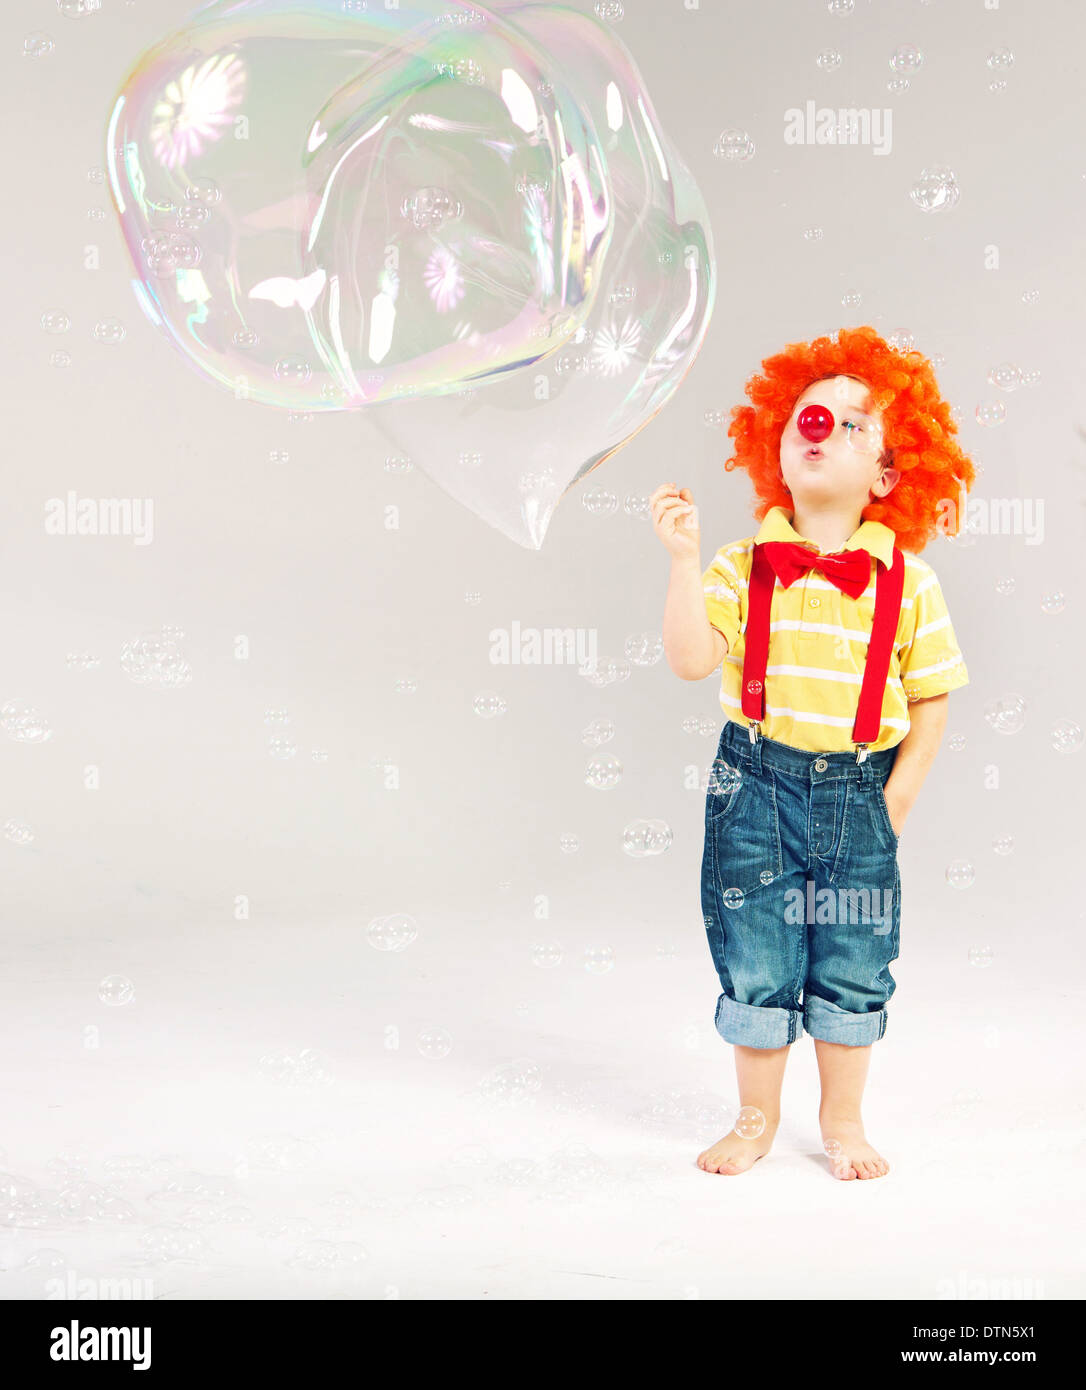 Divertente immagine del piccolo clown compiendo enormi bolle di sapone Foto Stock